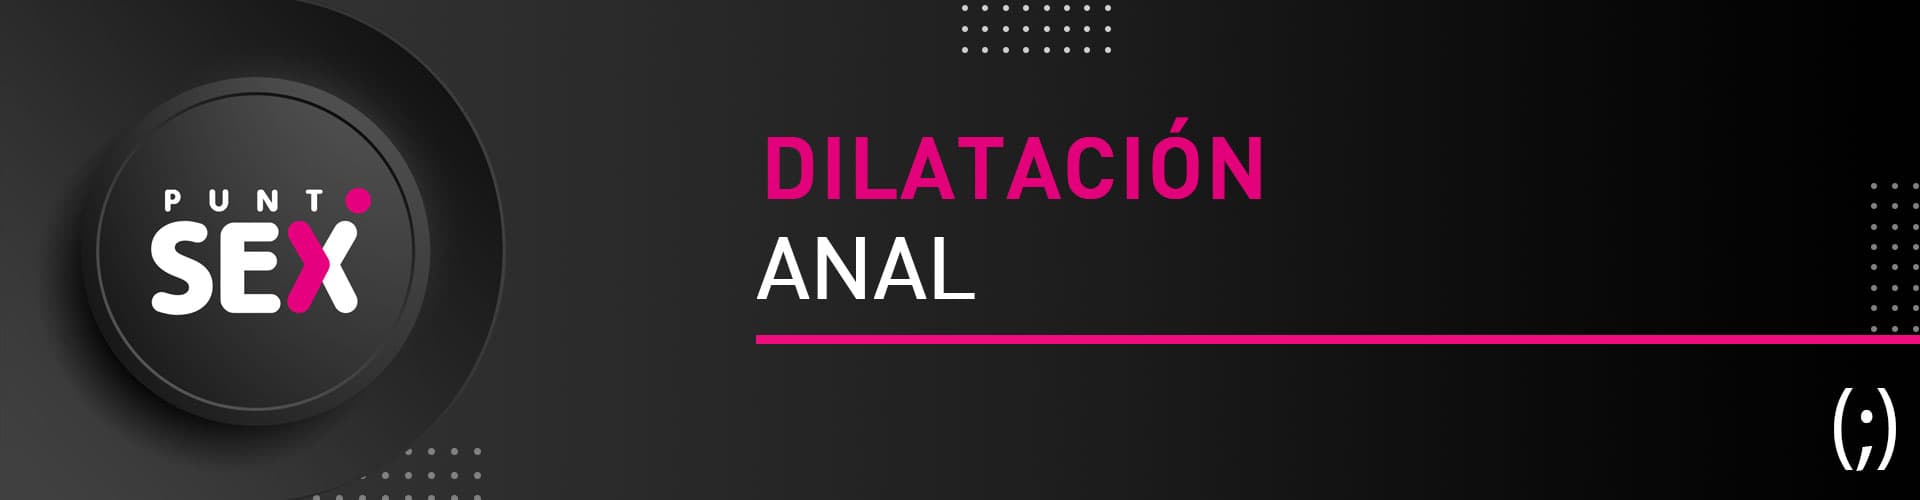 Dilatación anal